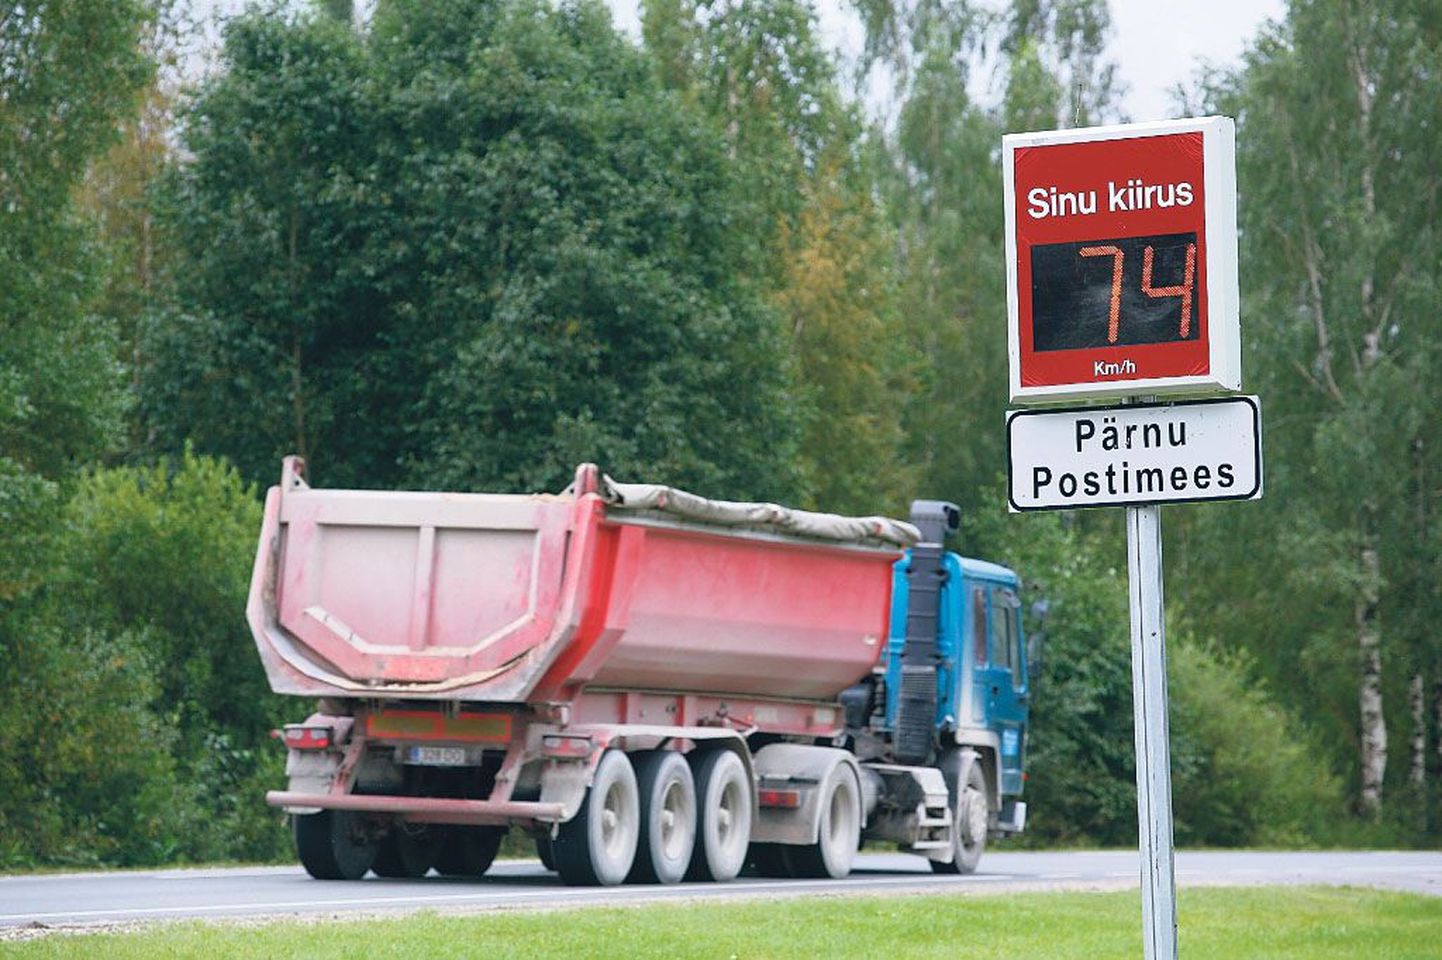 Kui soovite teada, kui täpne teie auto spidomeeter on, on lihtsaim viis seda kontrollida Sauga poolt Pärnusse sõites, kus on üleval kiirust mõõtev Pärnu Postimehe kirjadega tulp.